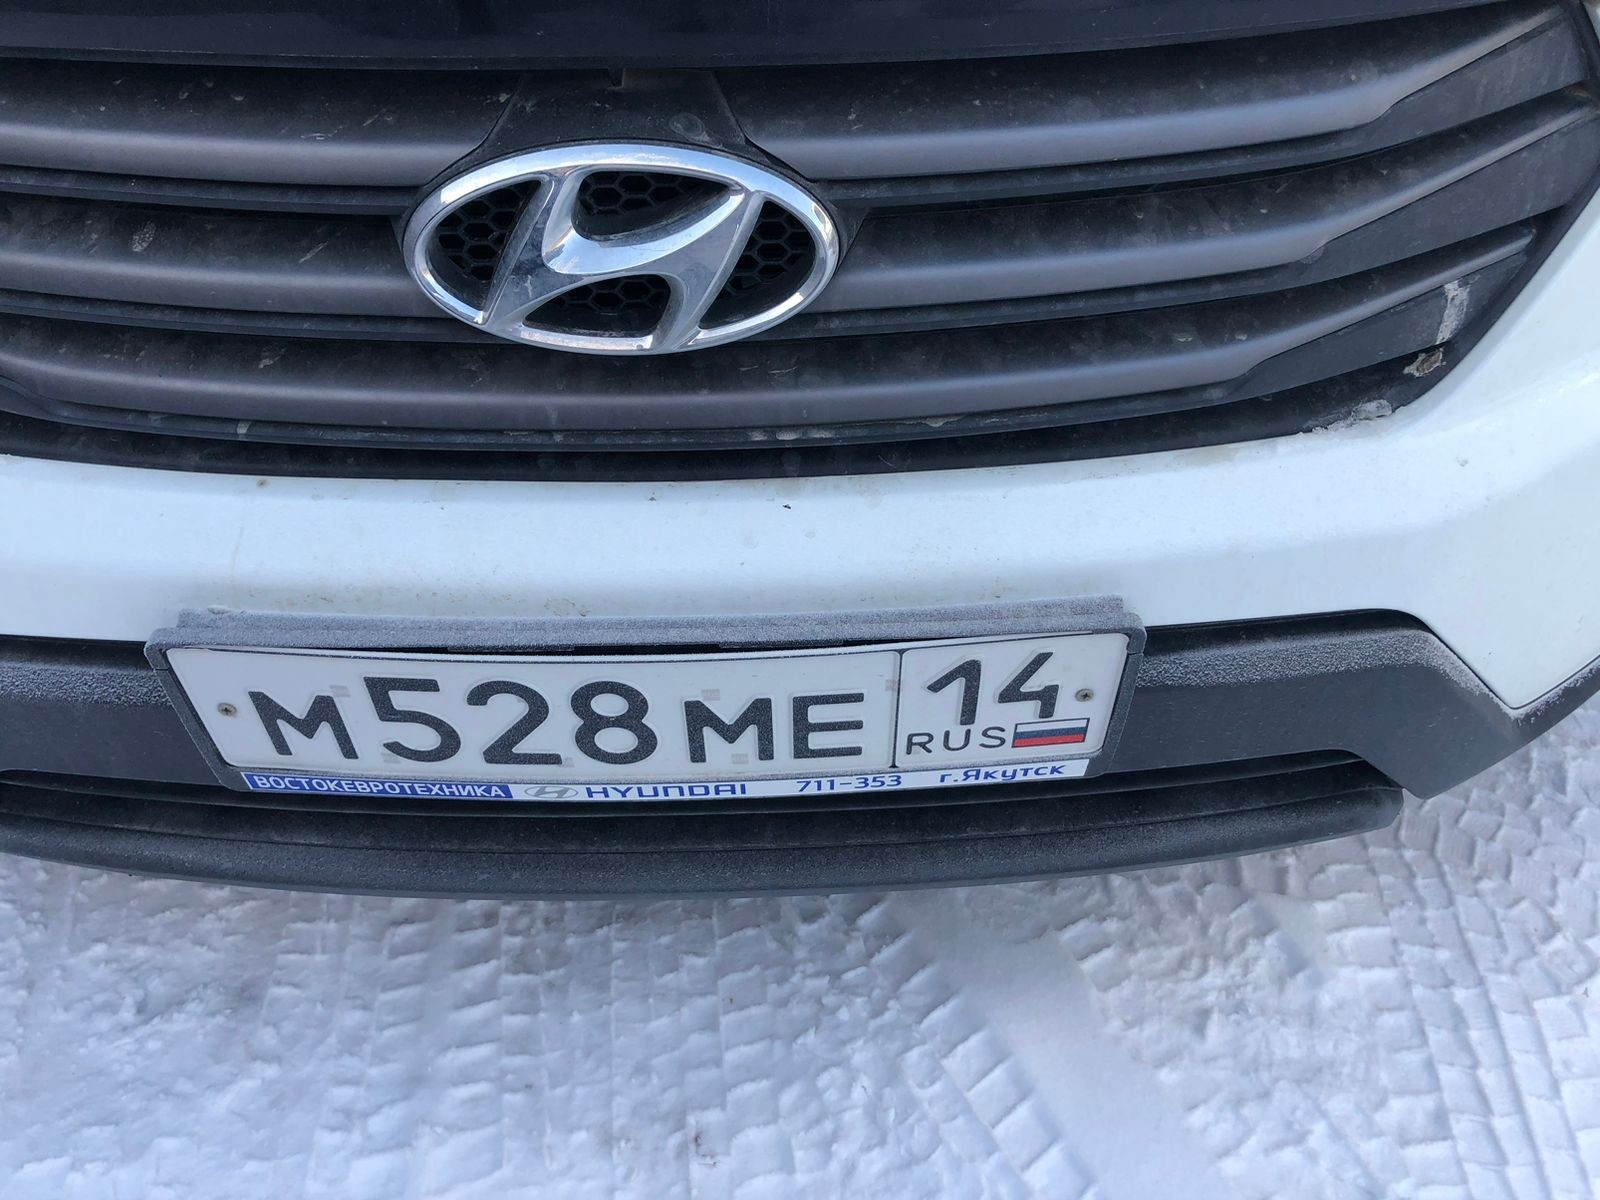 Транспортное средство Hyundai Creta, 2019 г.в., г/н М528МЕ14, цвет - белый, VIN Z94G2811DKR188752. М